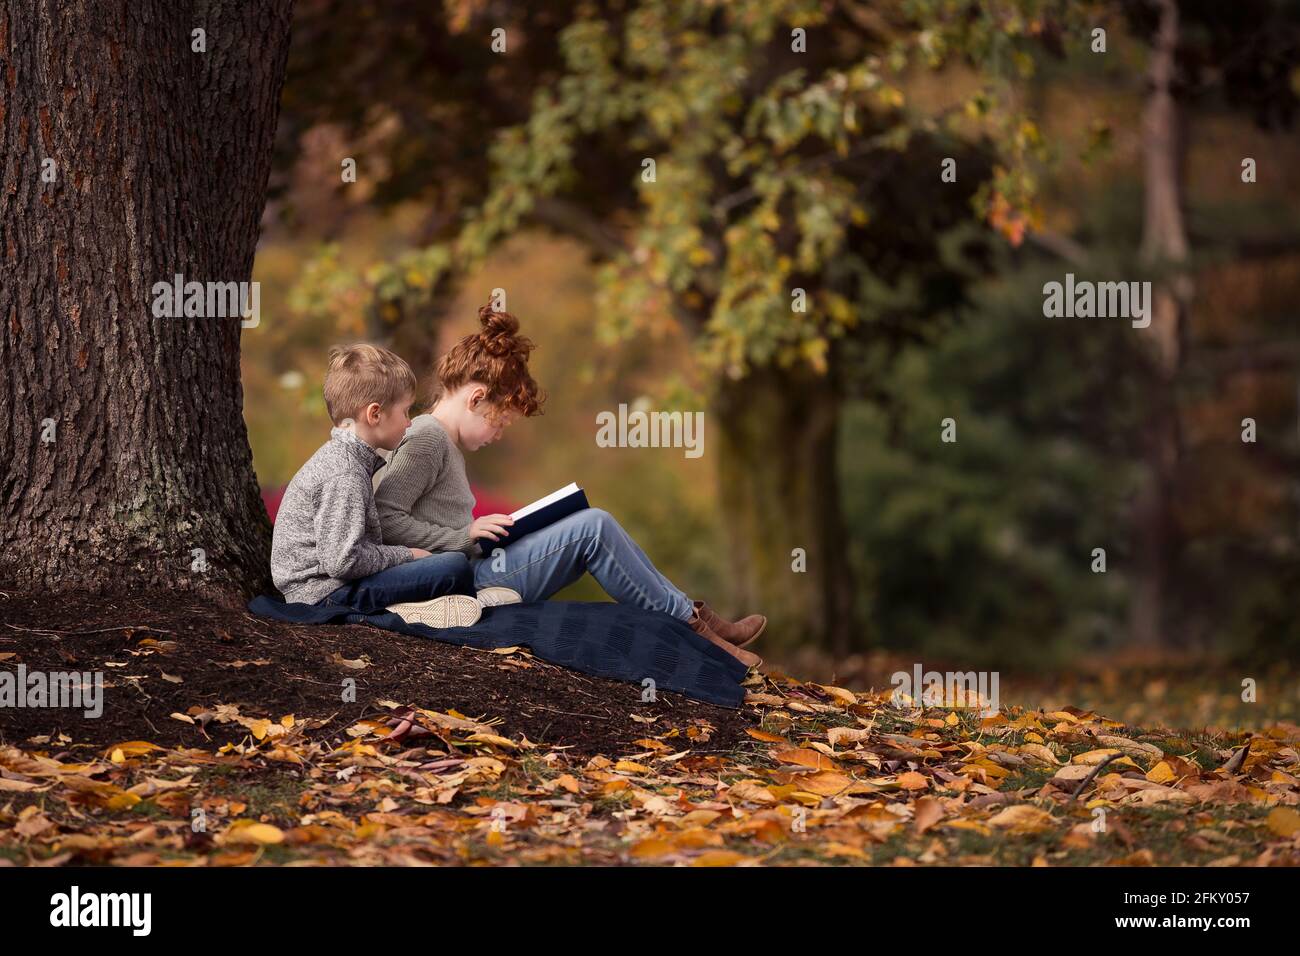 Un garçon et une fille lisant à l'extérieur sous un arbre Banque D'Images